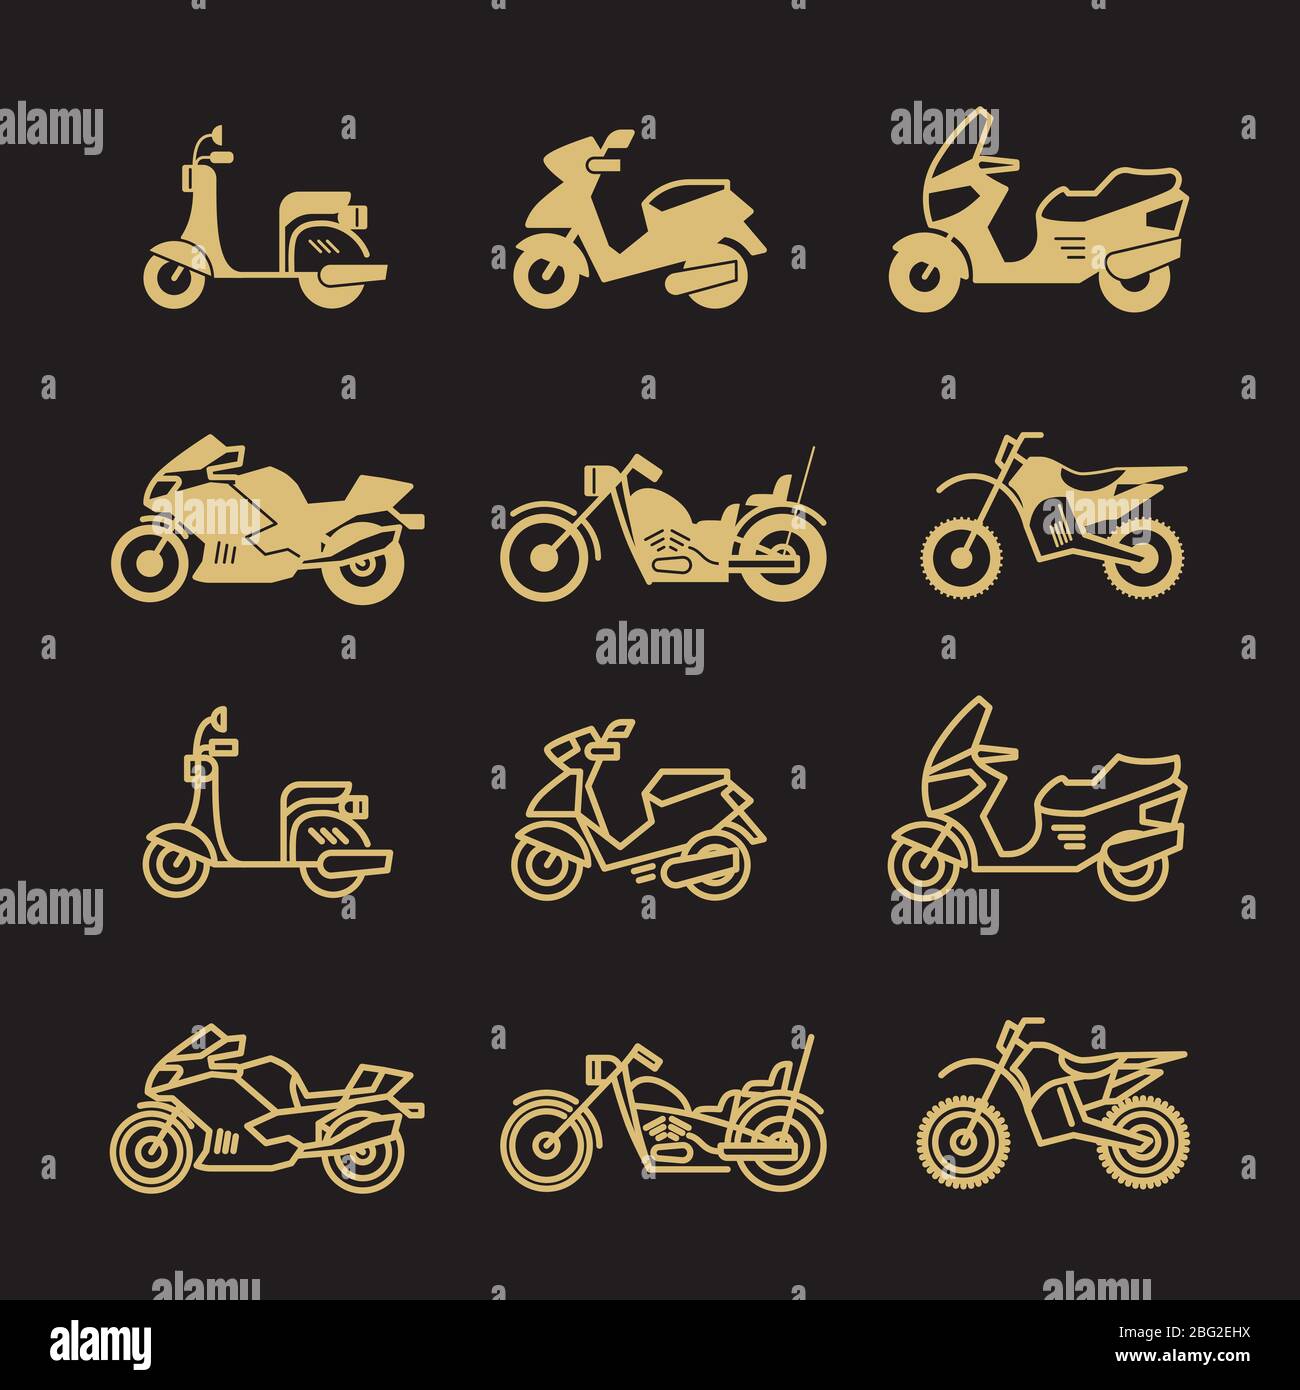 Les icônes de moto et de moto anciennes sont isolées sur fond noir. Illustration vectorielle Illustration de Vecteur